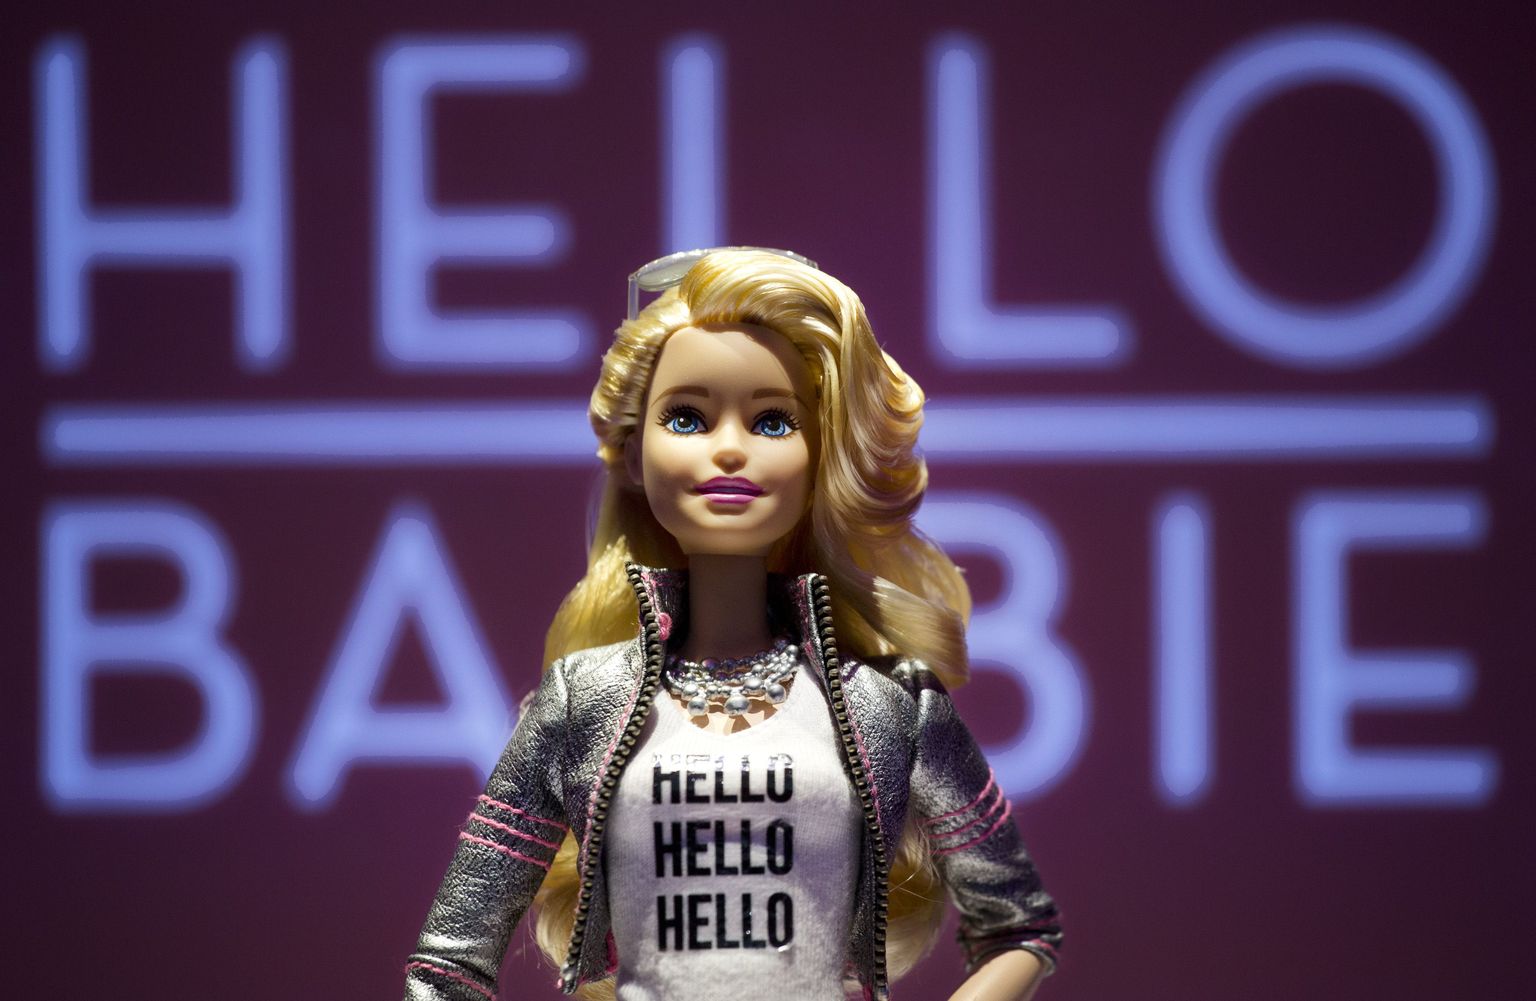 Hello Barbie.